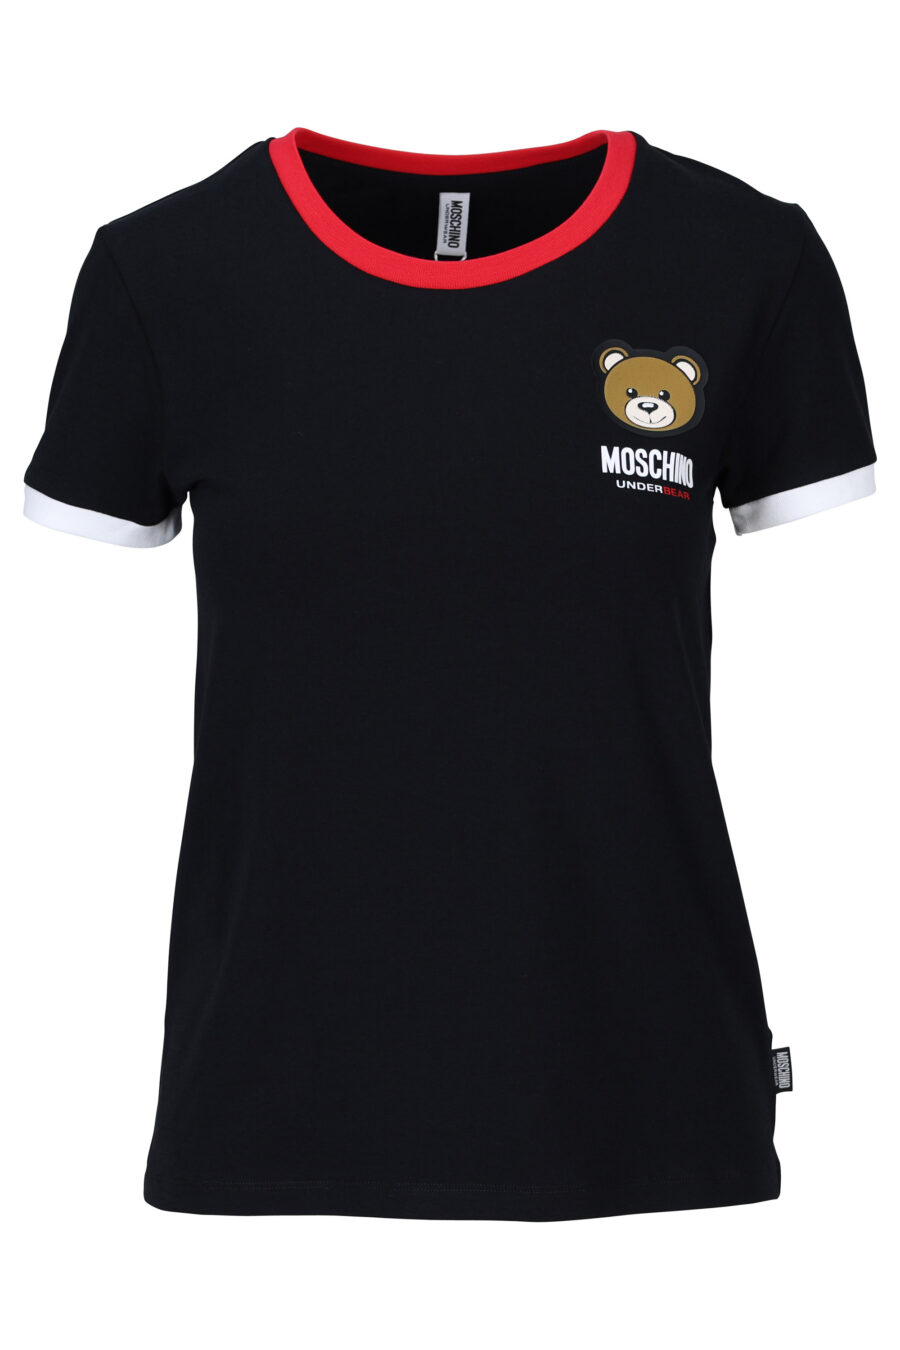 T-Shirt schwarz mit rotem und Bär-Logo "underbear" Patch - 667113062082